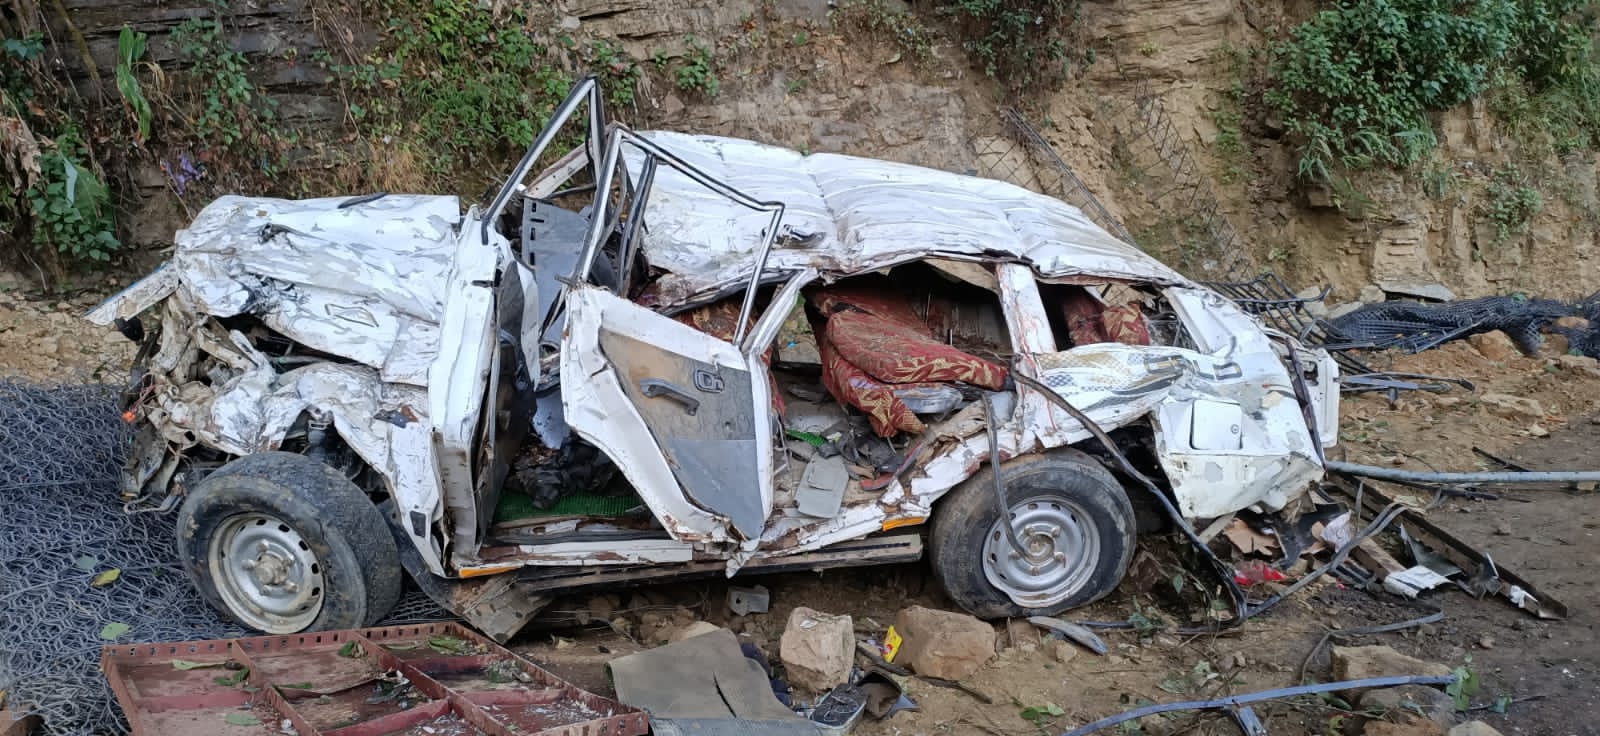 मिजोरम में कैब पर चट्टान गिरने से पांच मरे